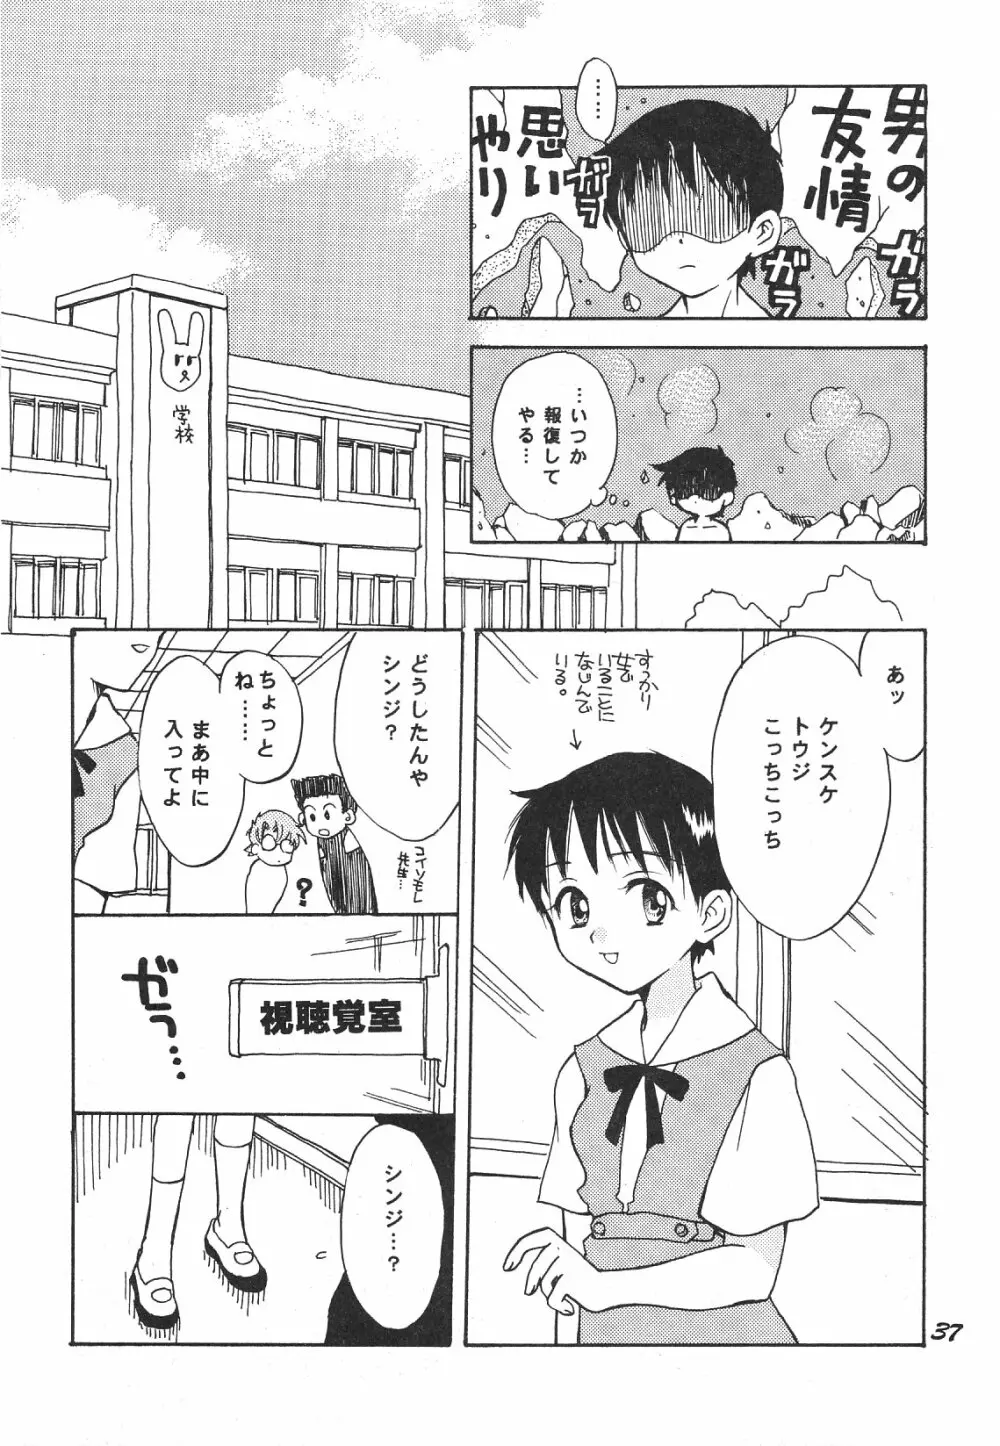 Maniac Juice 女シンジ再録集 '96-'99 - page37